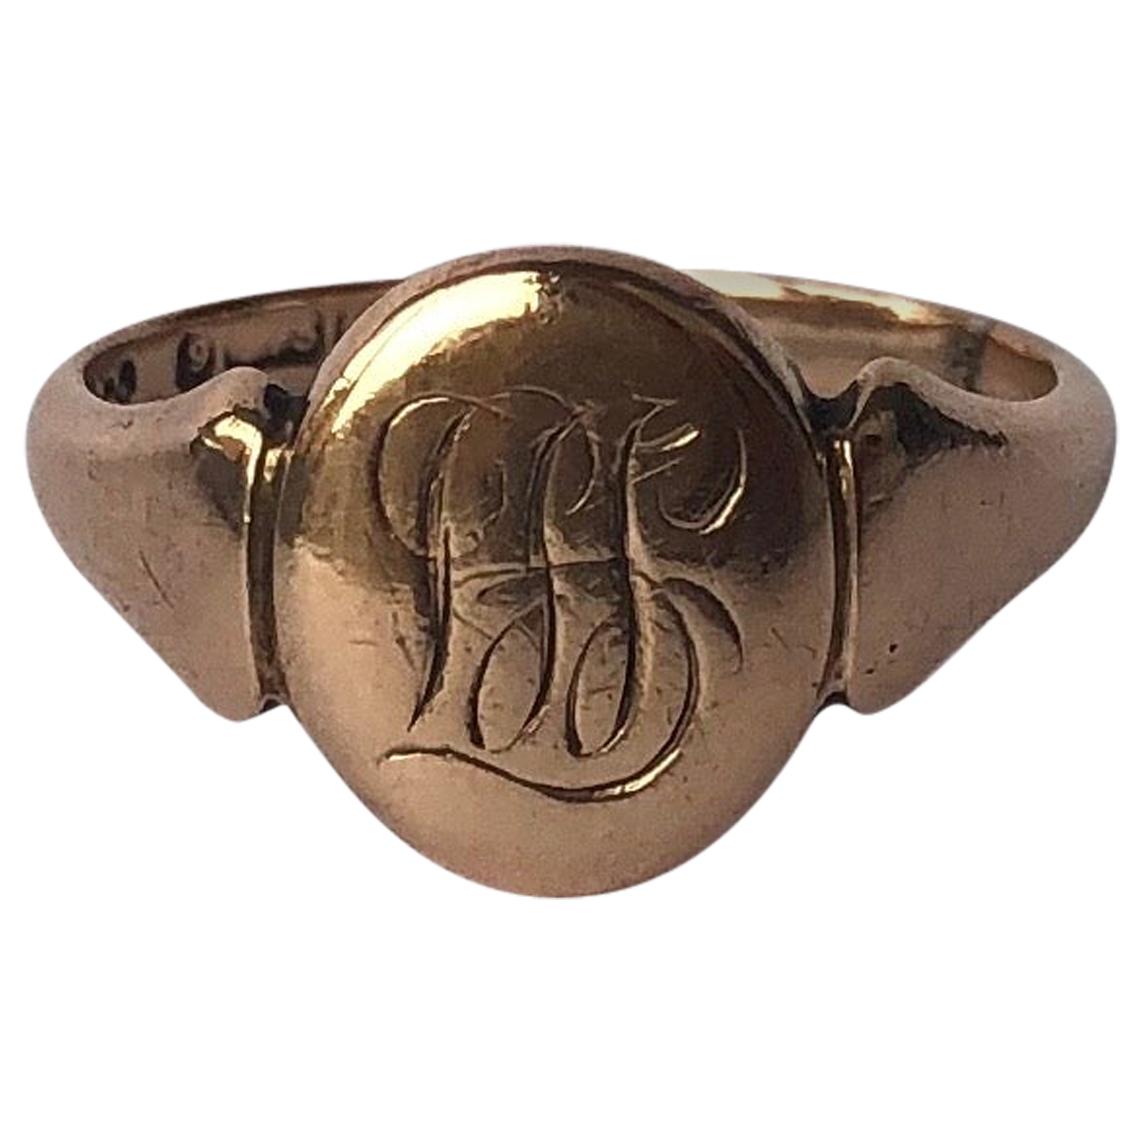 Edwardian 9 Carat Rose Gold Signet Ring